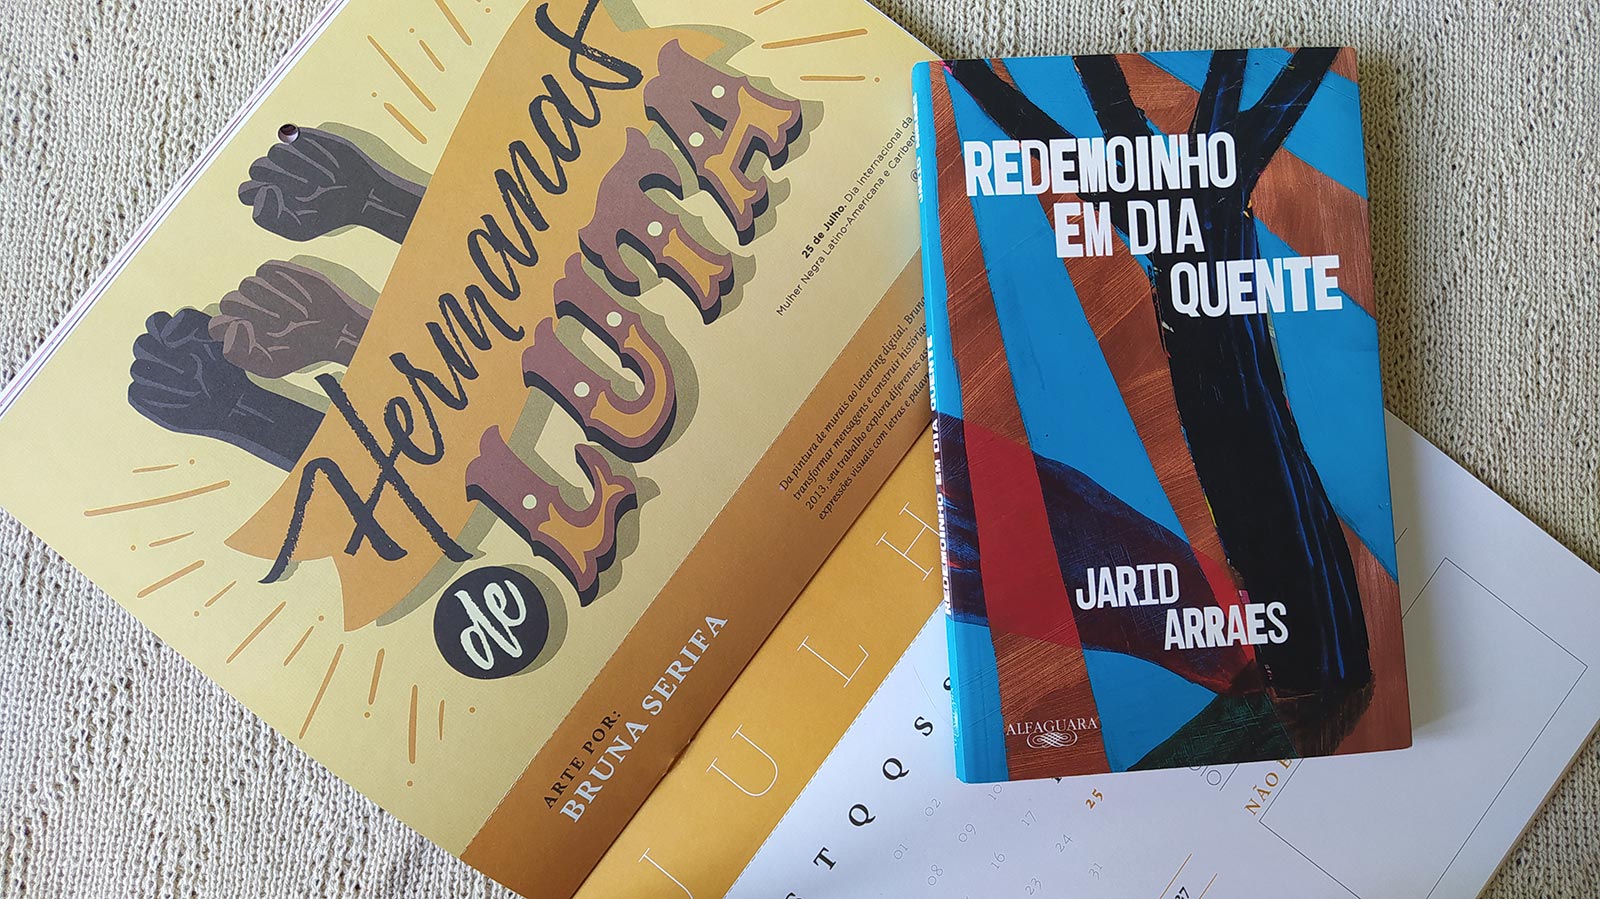 Redemoinho em dia quente foi o livro escolhido para as rodas de leitura no CIS Piraquara